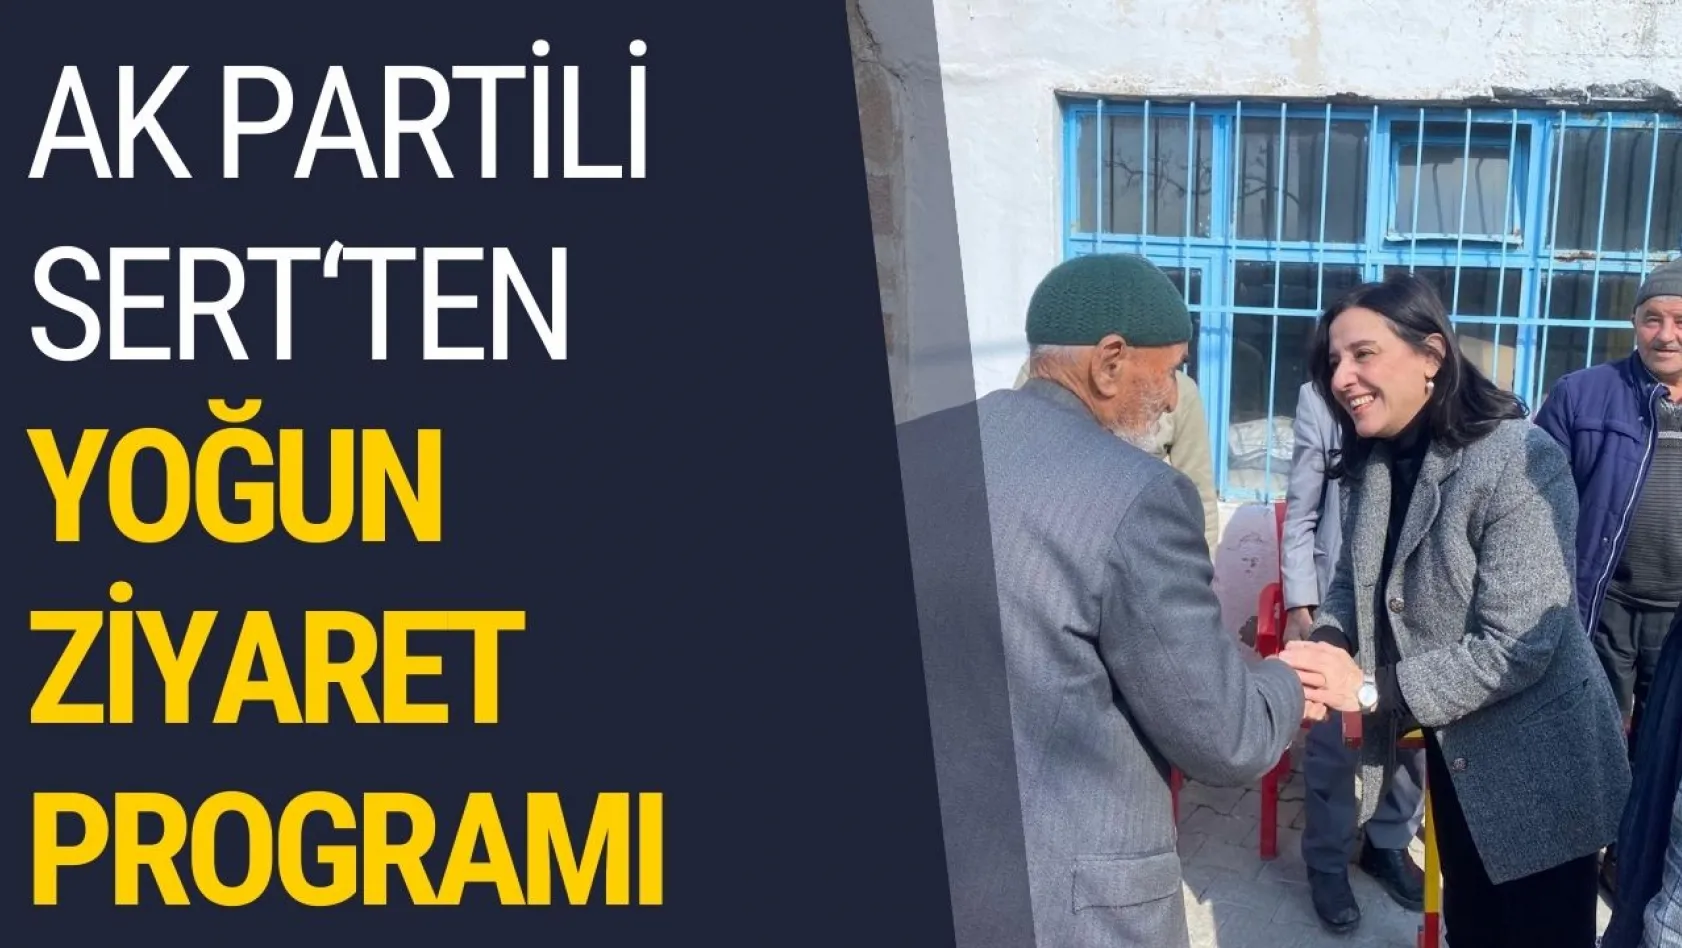 AK Partili Sert Yoğun Ziyaret Programı Gerçekleştirdi